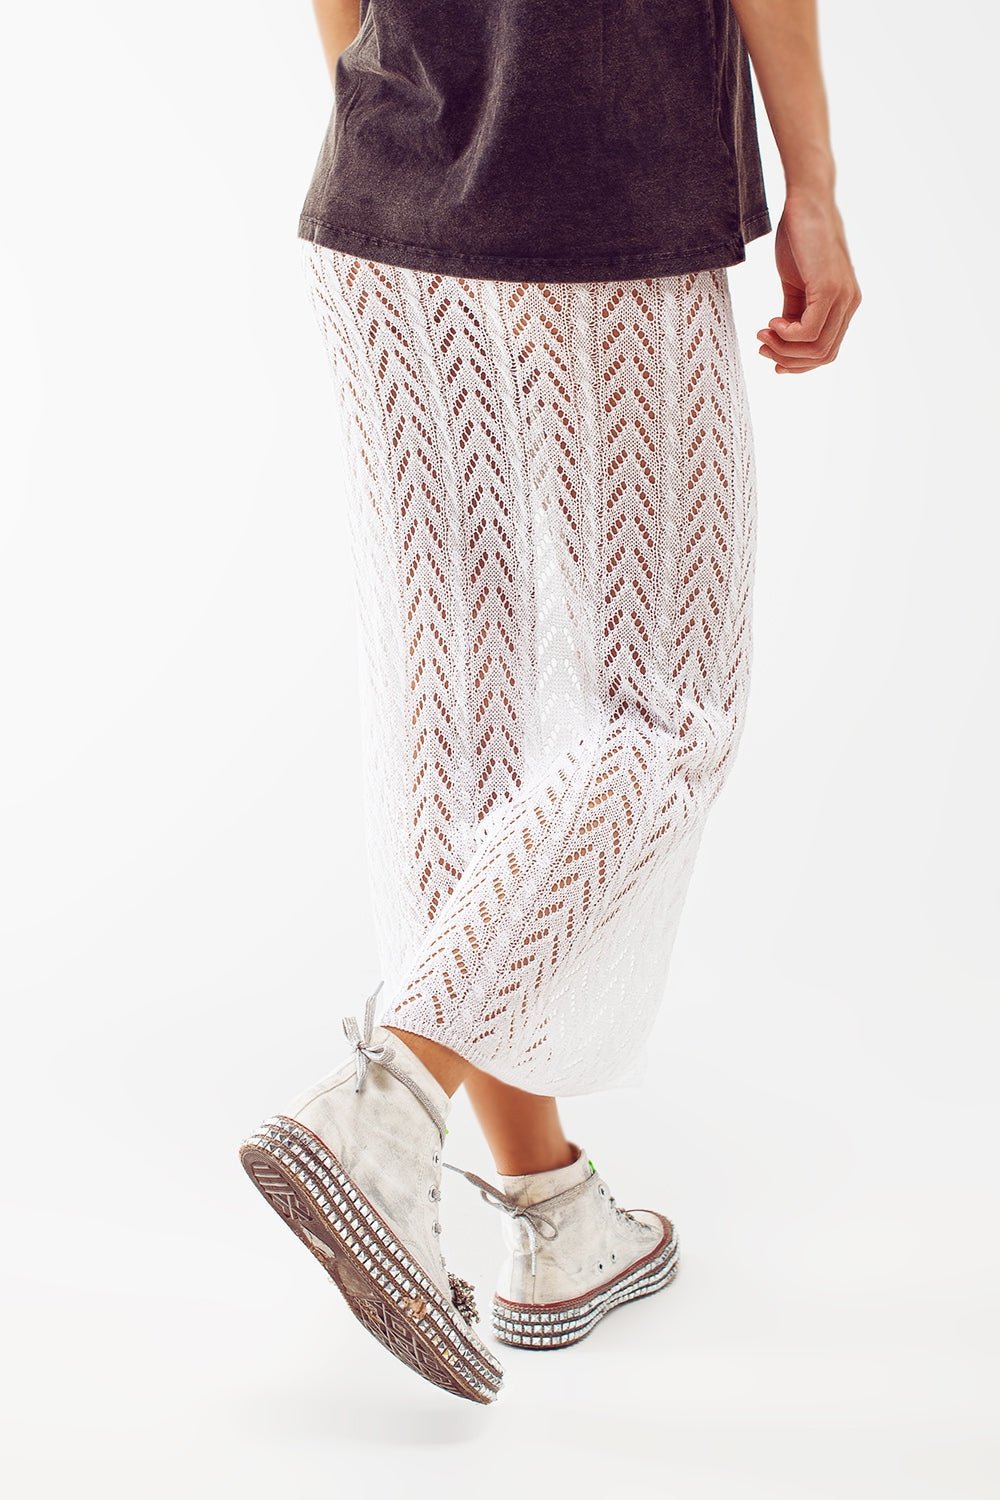 Crochet Maxi Skirt in White - Mack & Harvie